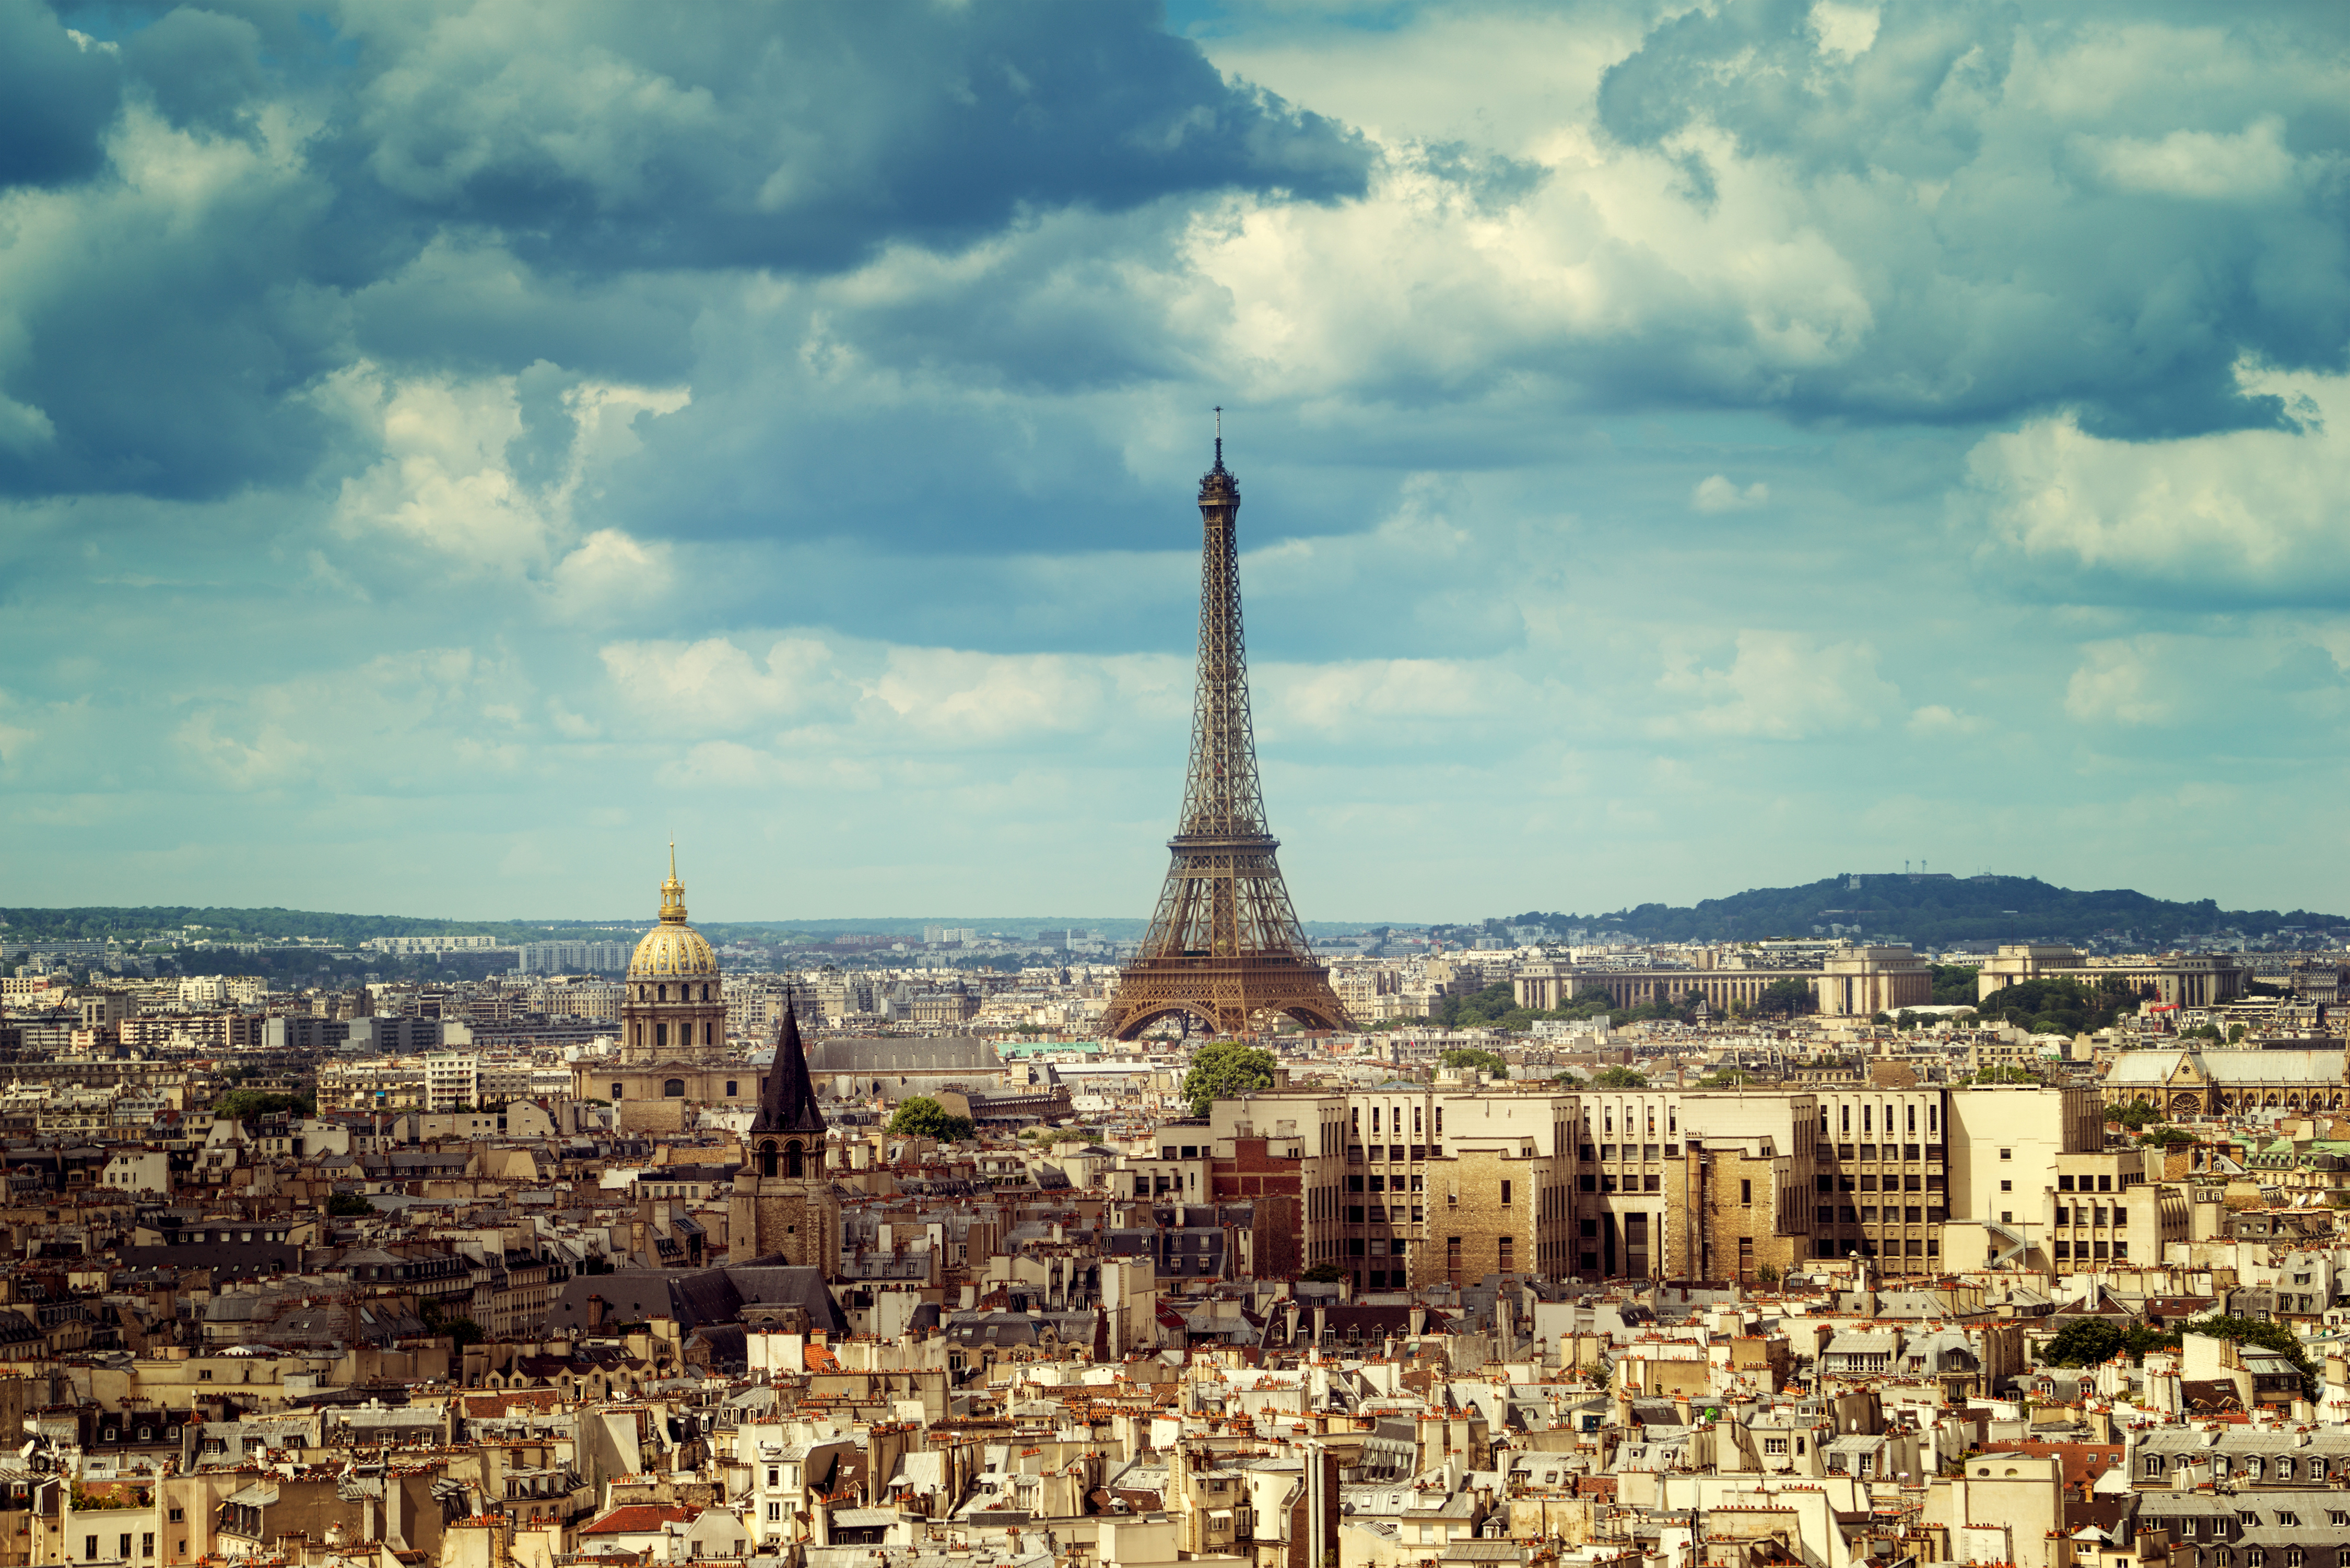 Paris france. Париж столица Франции. Эйфелева башня в Париже -столице Франции. Эйфель башня Франция. Франция Эйфелева башня (г. Париж).